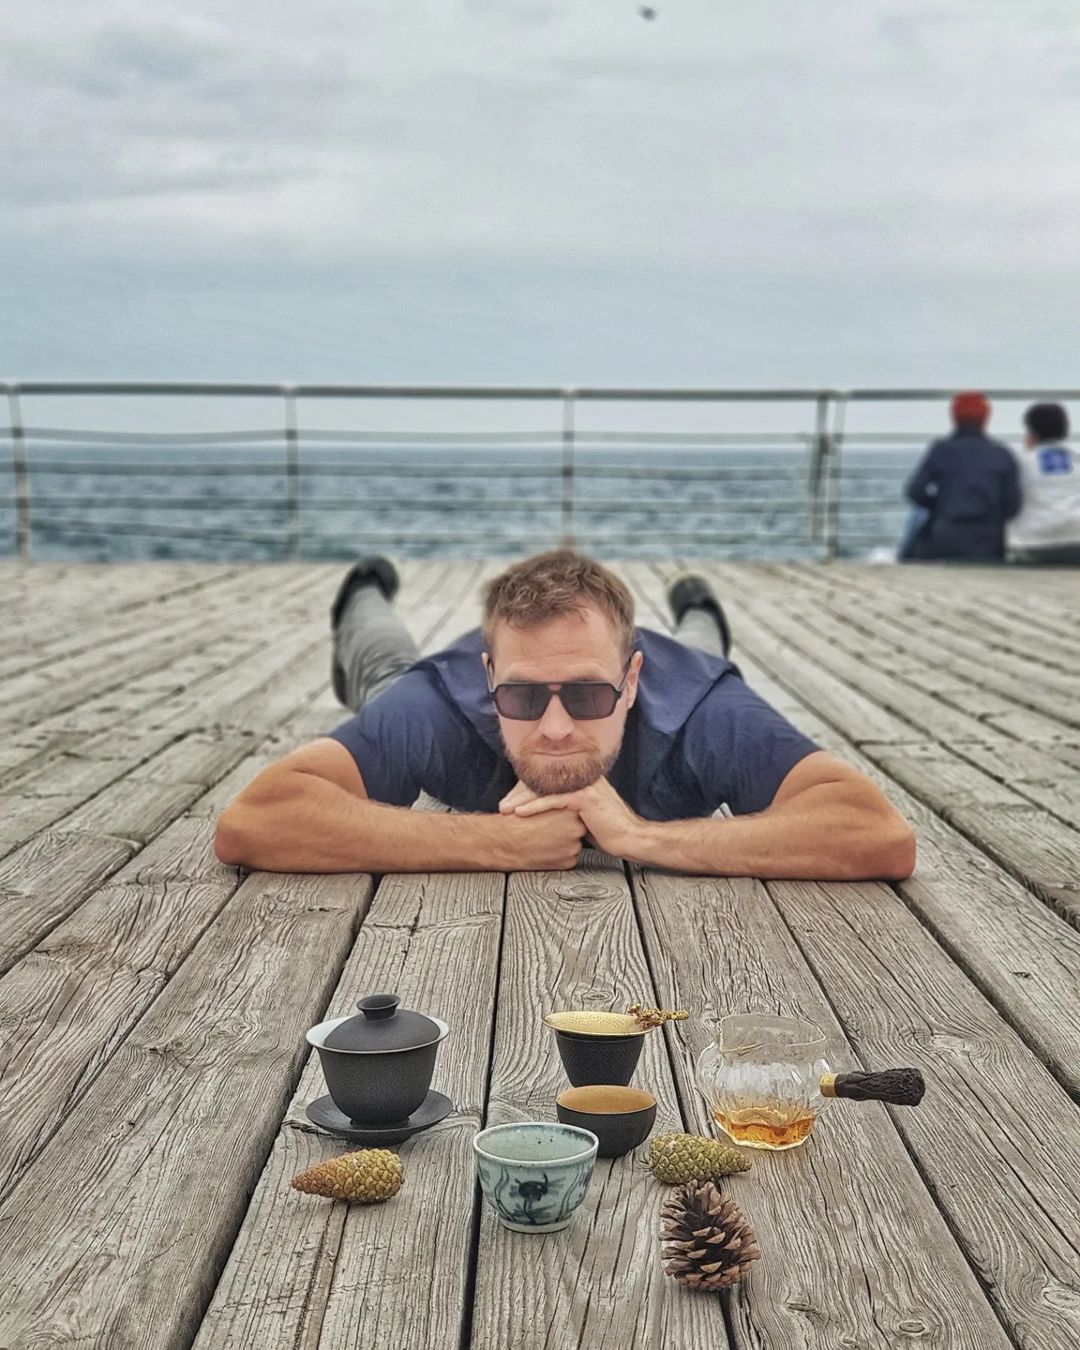 Актер давно практикует чайные церемонии и говорит, что это успокаивает и разгружает мысли. Фото: Instagram.com/artemy_yehorov/